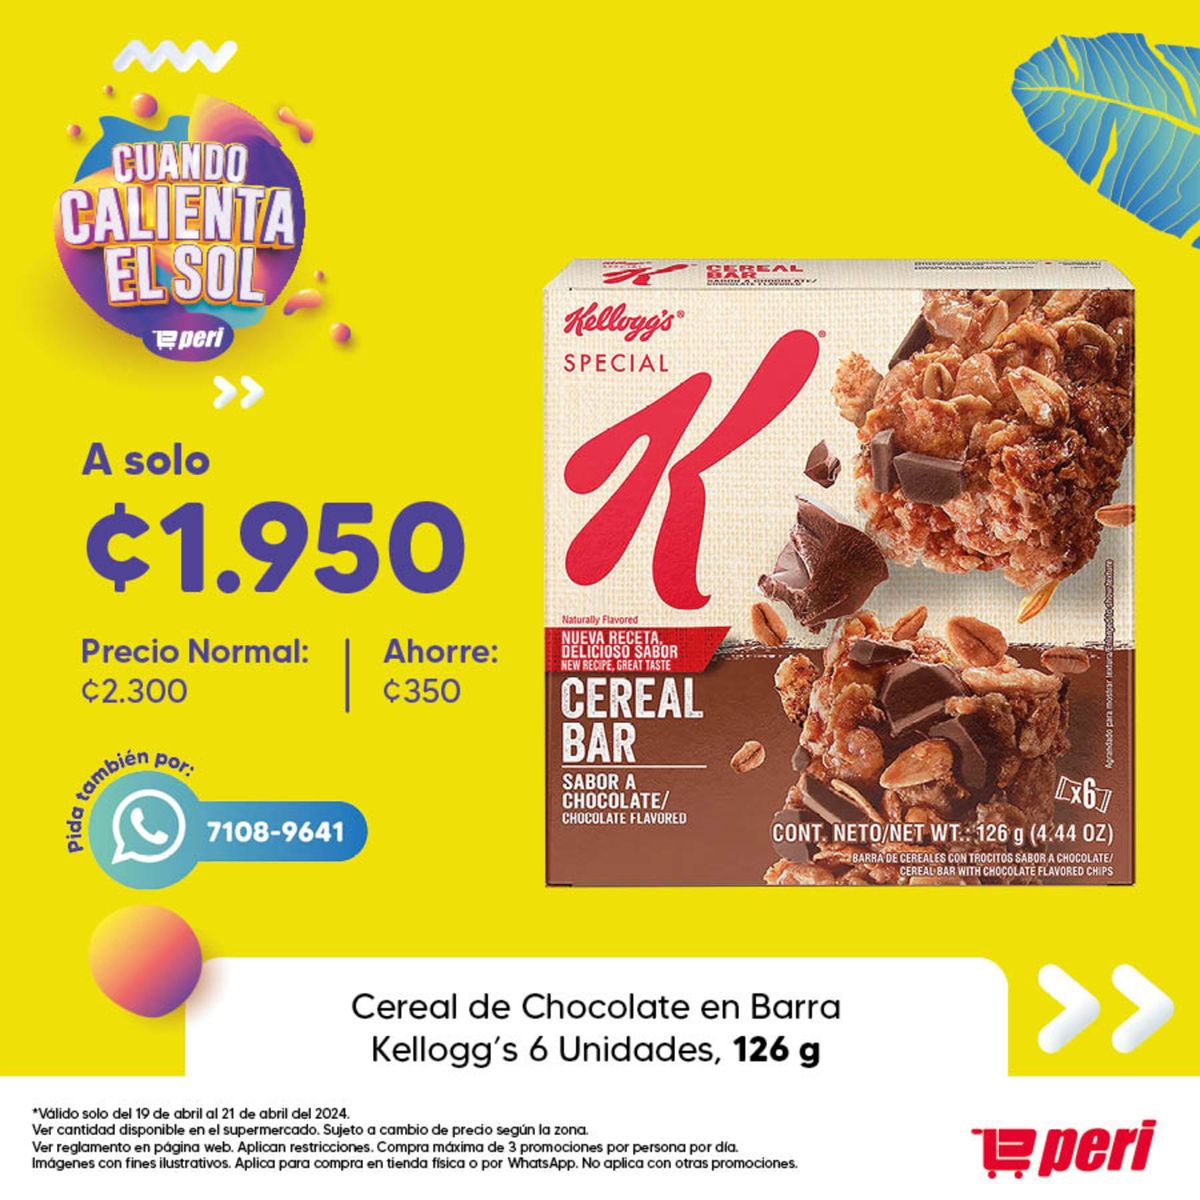 Cereal de Chocolate en Barra Kellogg's 6 Unidades, 126 g